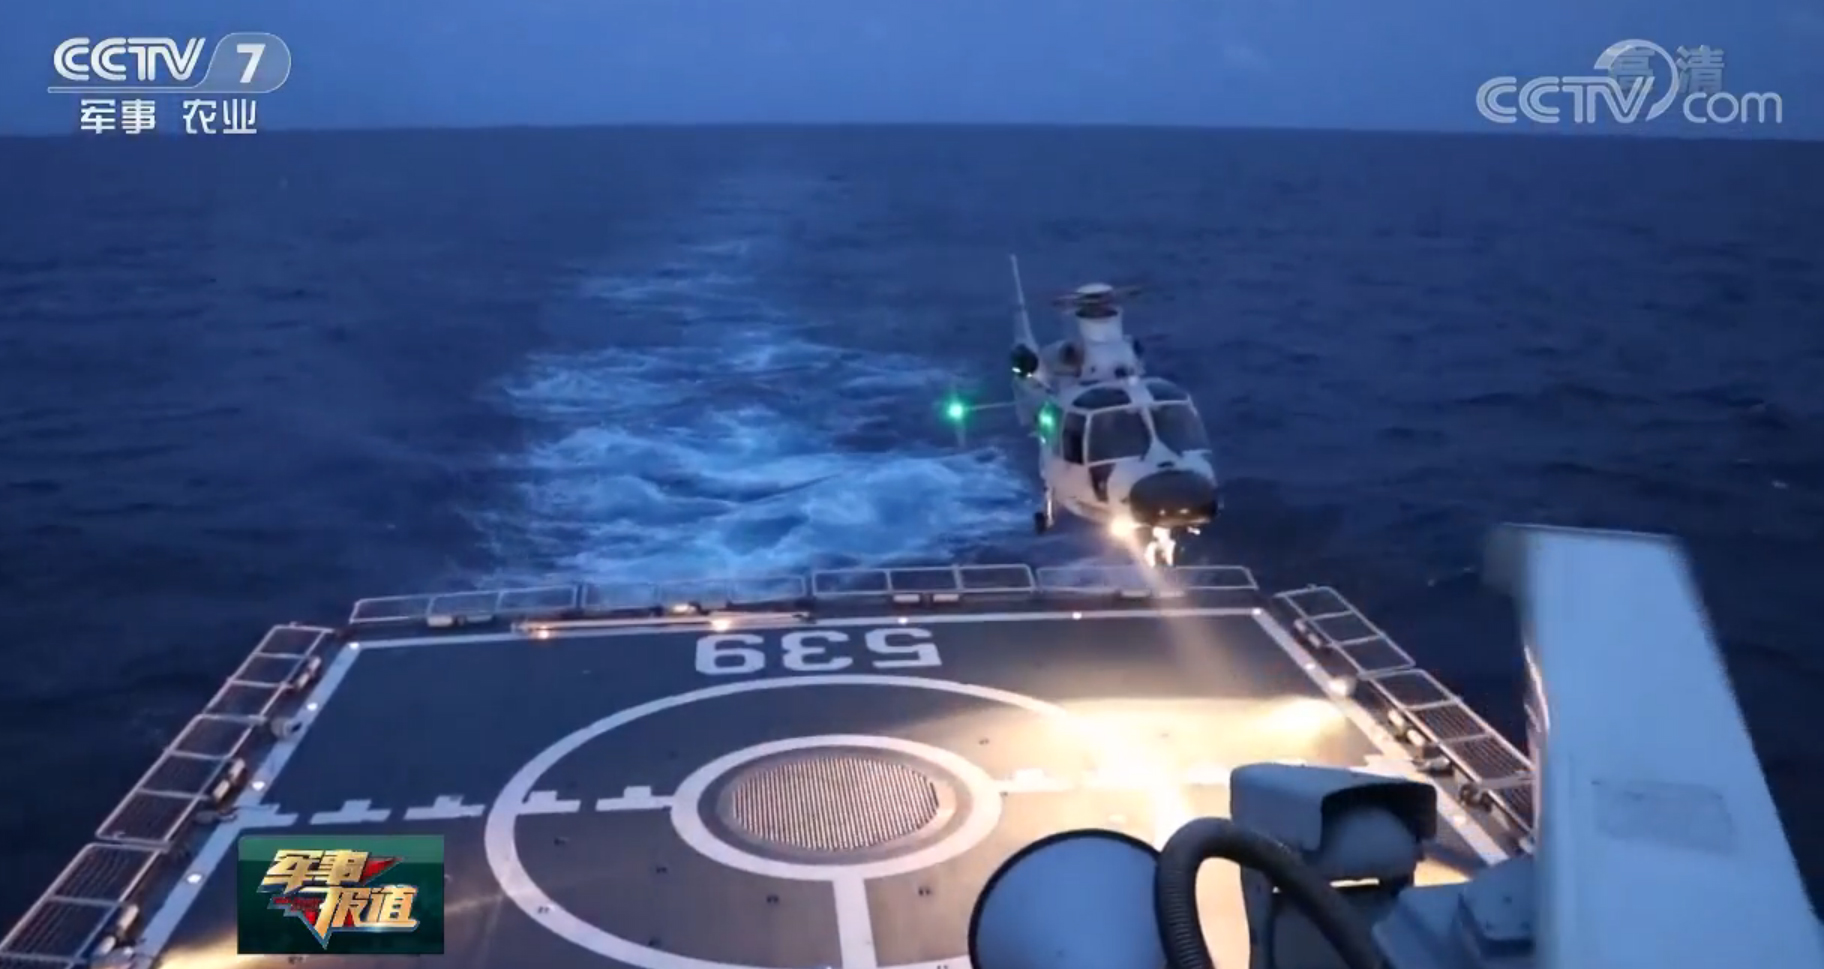 海軍第30批護航編隊組織艦載直升機跨晝夜飛行訓練【4】